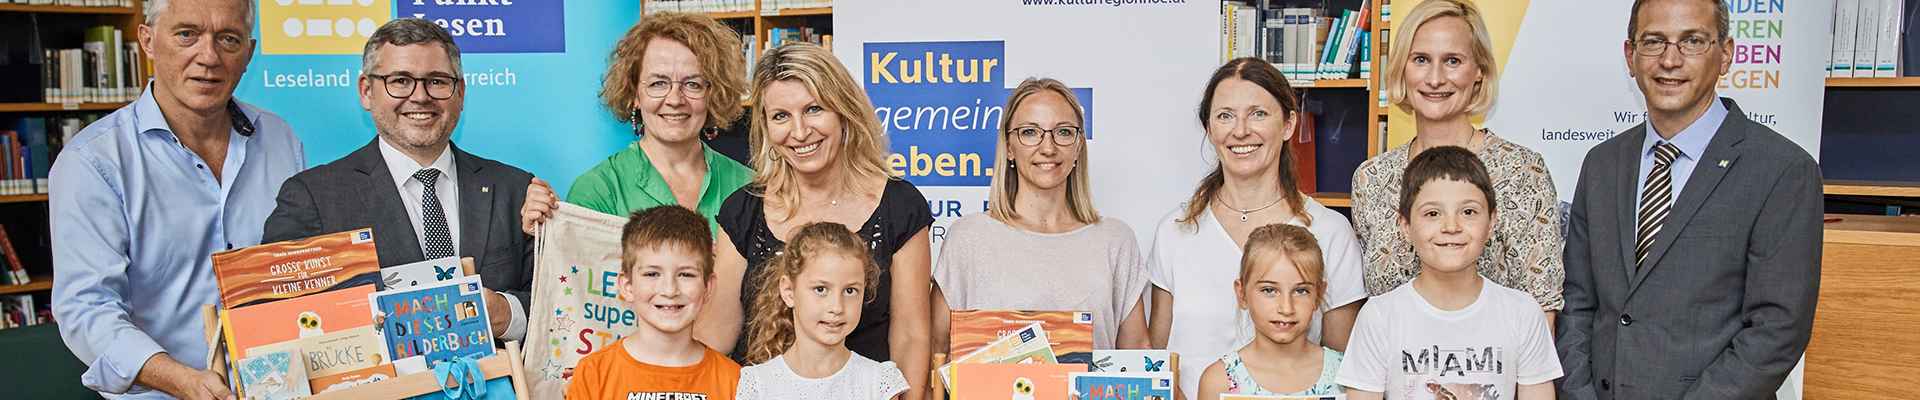 Auf einem Gruppenbild lächeln die Gewinnerkinder des Lesepasses mit ihren Lehrerinnen und Direktorinnen in die Kamera. Sie haben Bücherpakete und Lesesackerl in den Händen. 